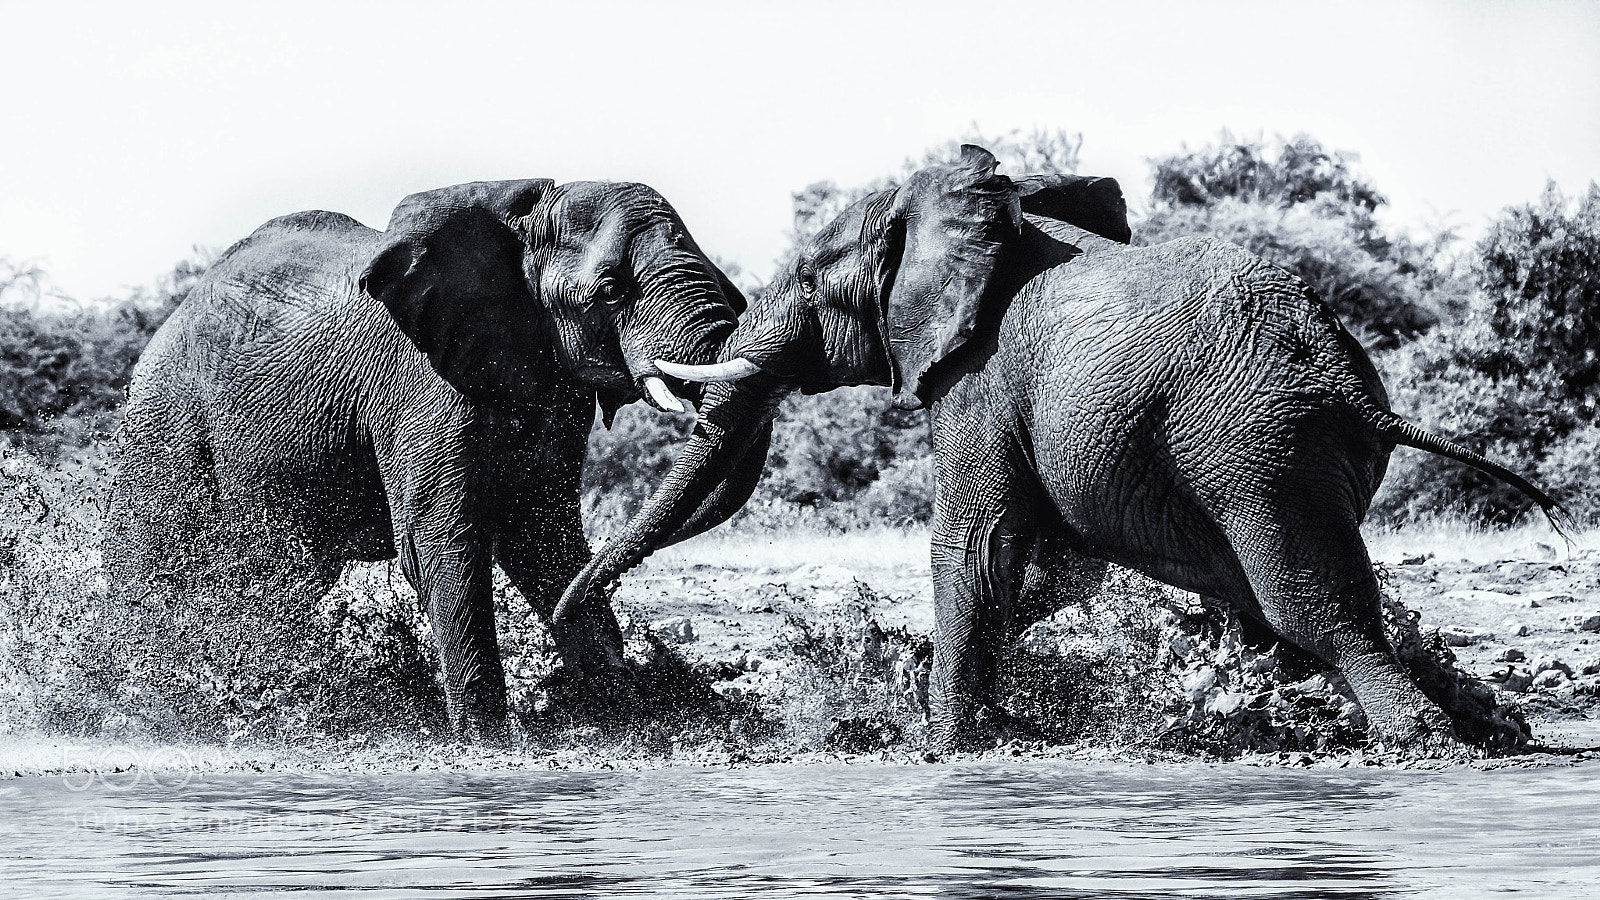 Pentax K-3 II sample photo. Fighting elephants, etosha photography